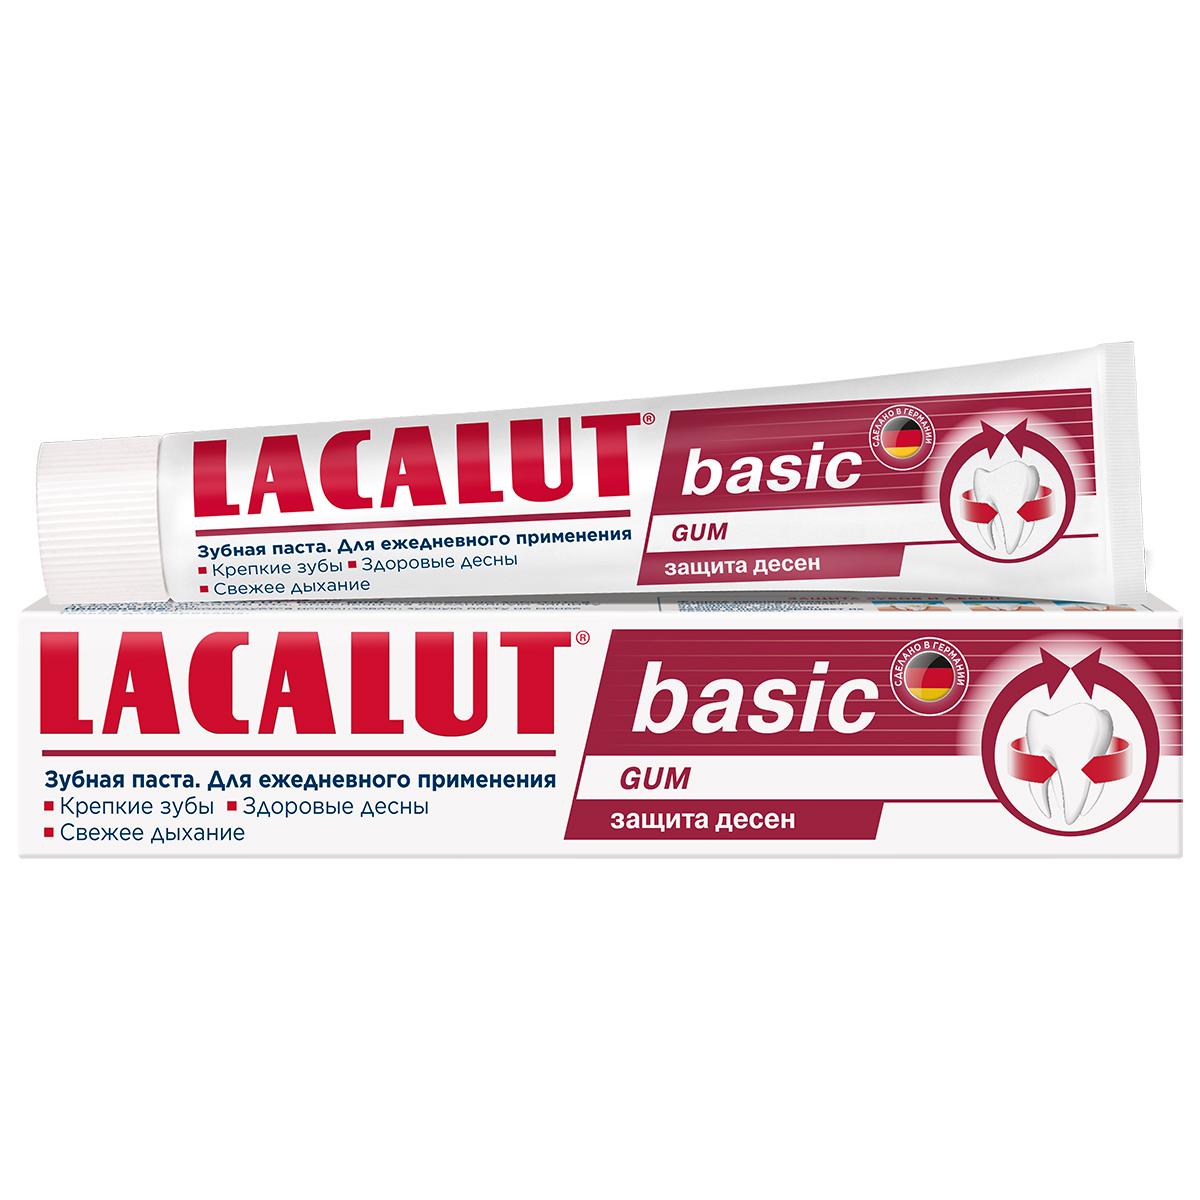 

Lacalut Зубная паста Basic Gum для защиты десен, 75 мл (Lacalut, Зубные пасты), Зубные пасты